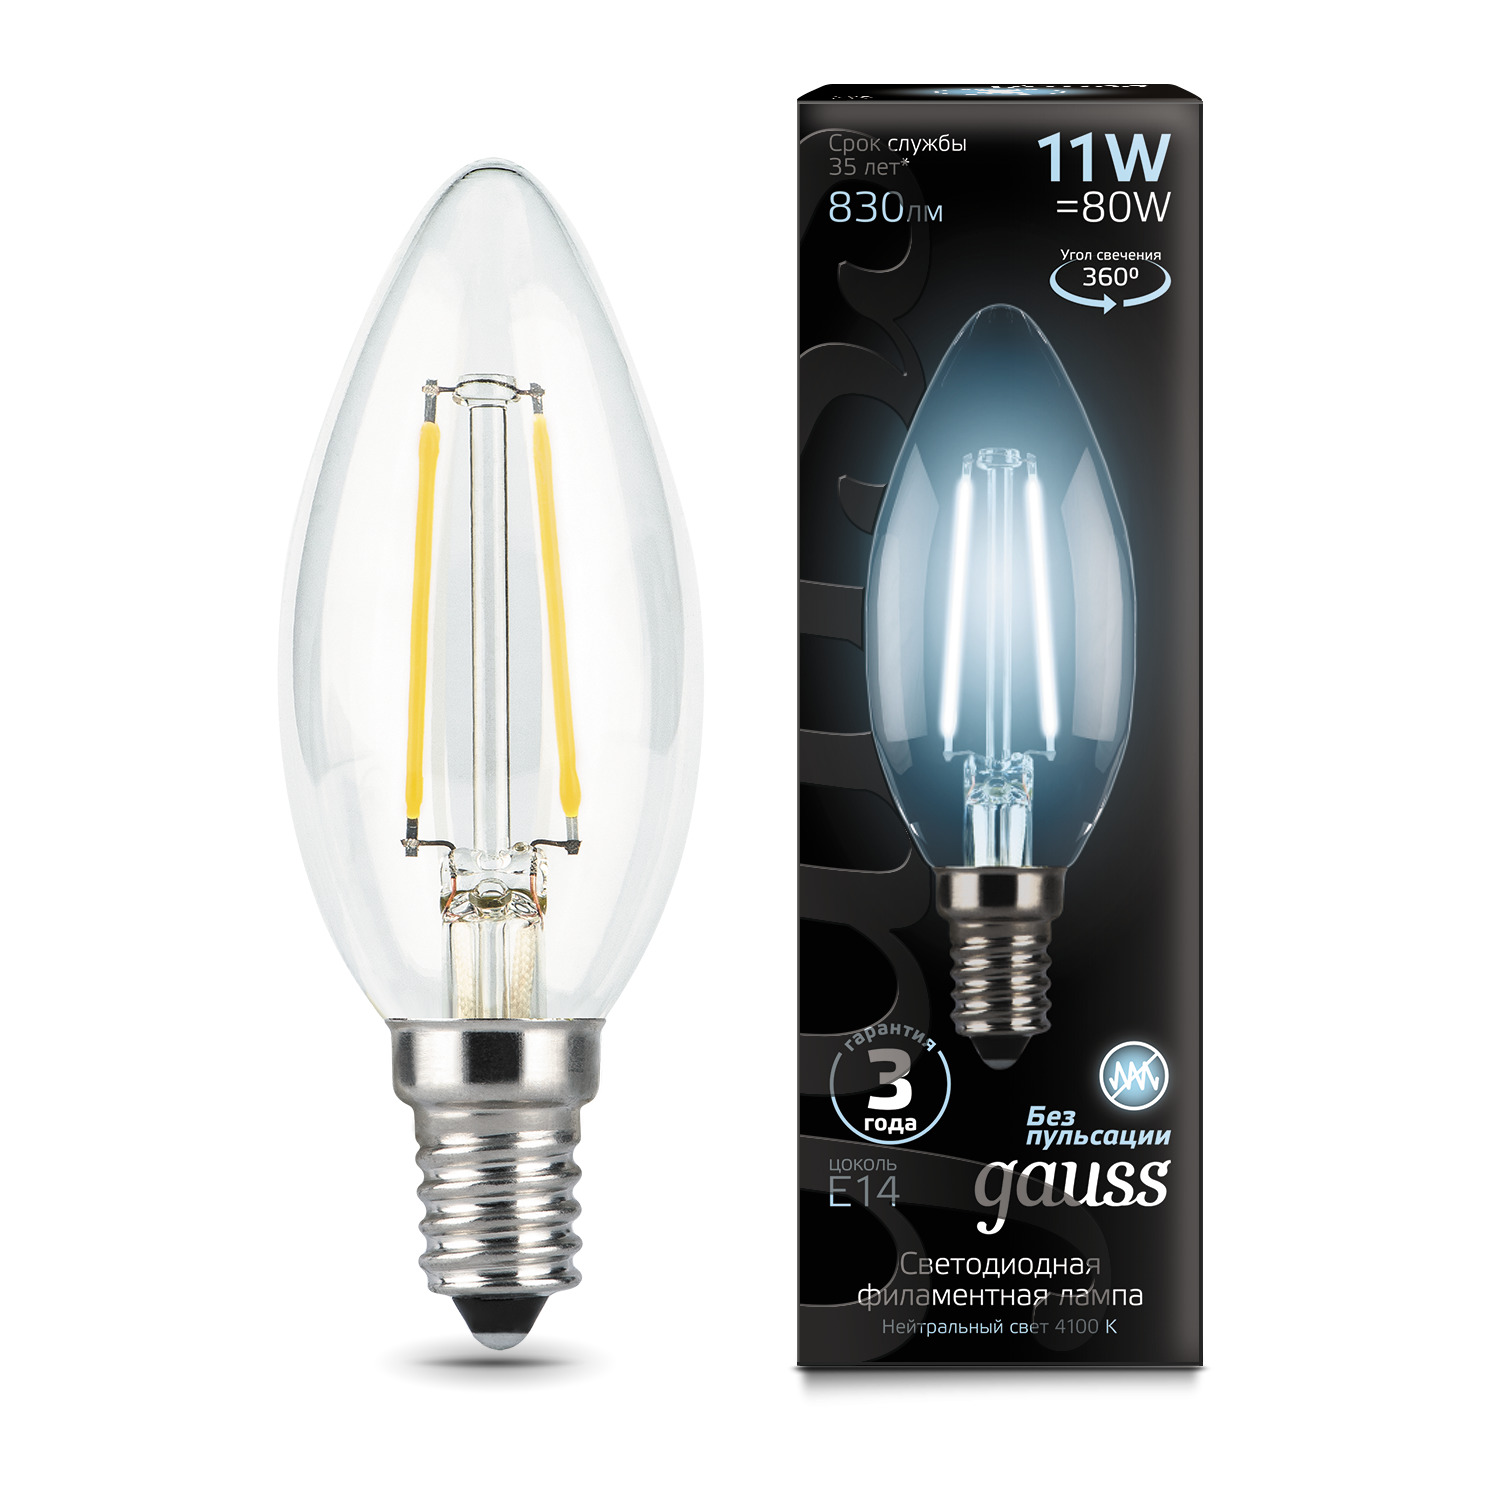 Упаковка ламп 10 штук Gauss Filament Свеча 11W 830lm 4100К Е14 LED купить в интернет-магазине, цены на Мегамаркет